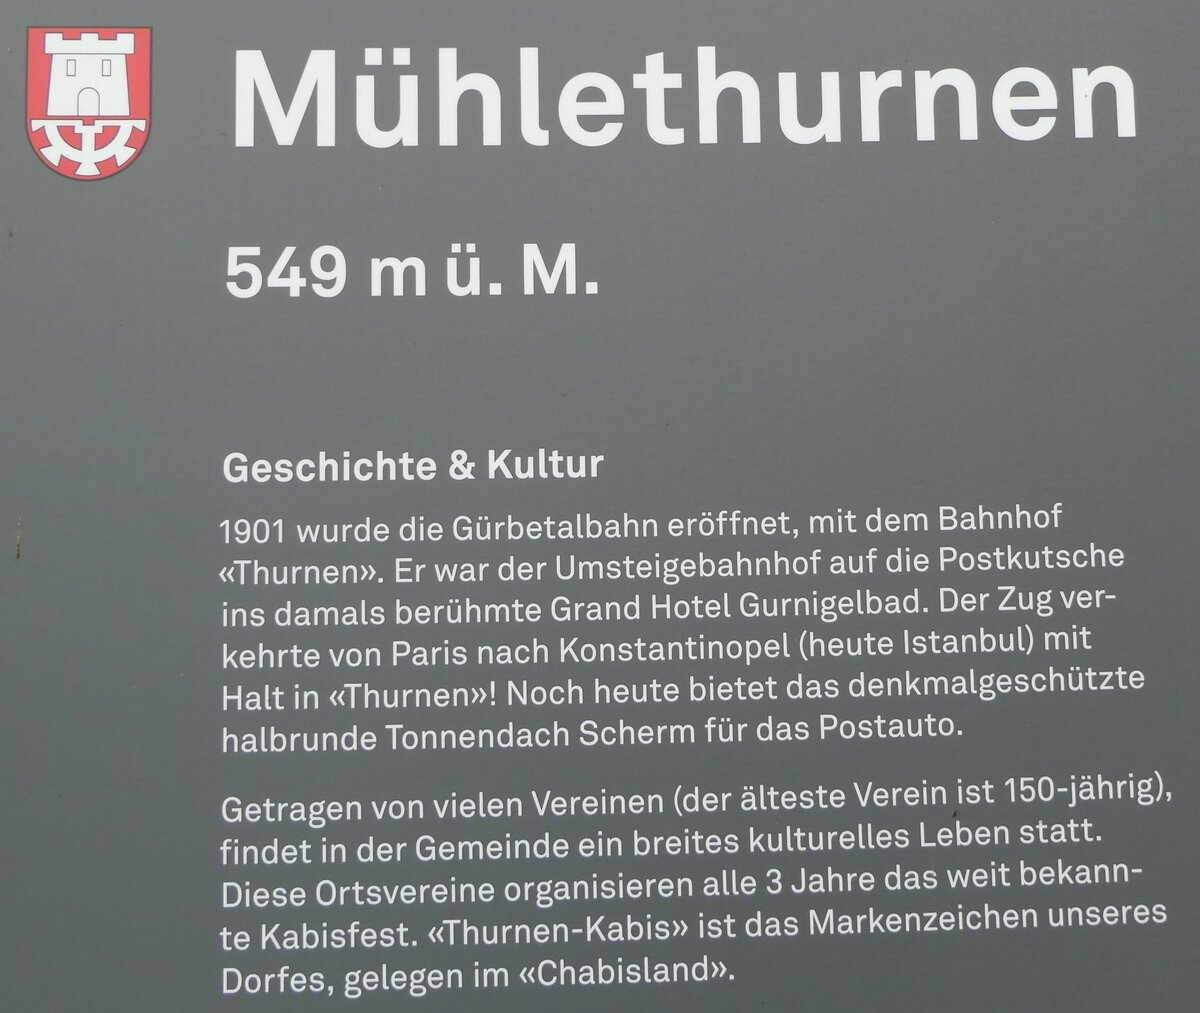 (231'434) - Infotafel ber die Geschichte von Mhlethurnen am 17. Dezember 2021 beim Bahnhof Thurnen